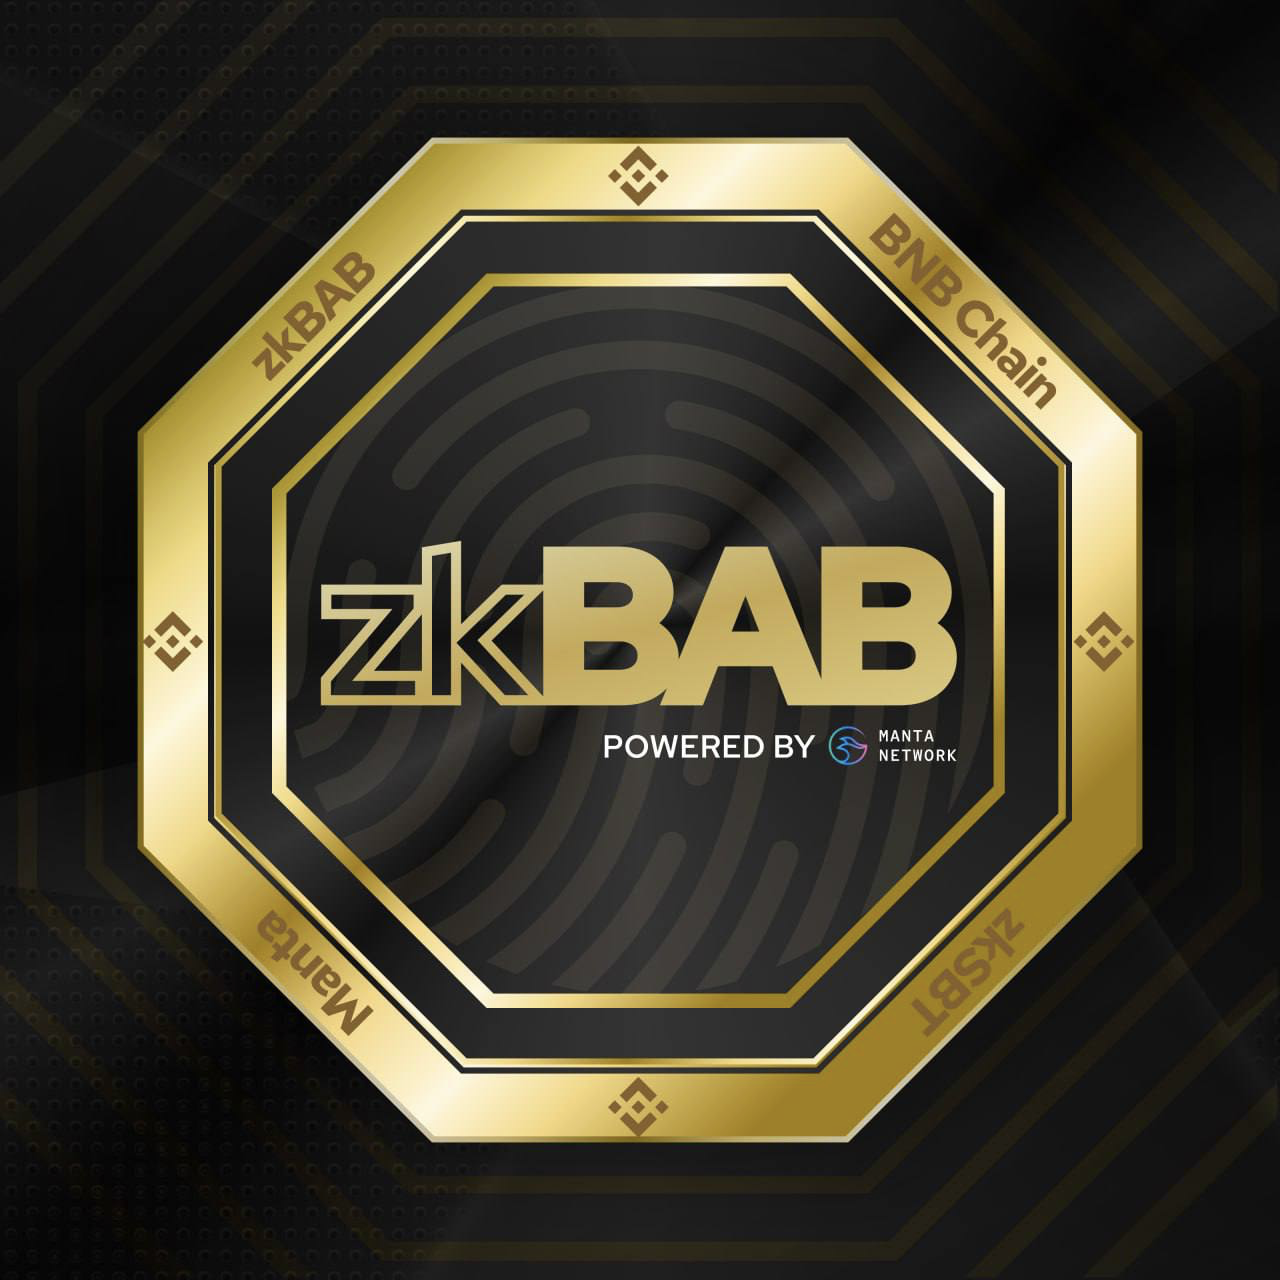 zkbab_logo